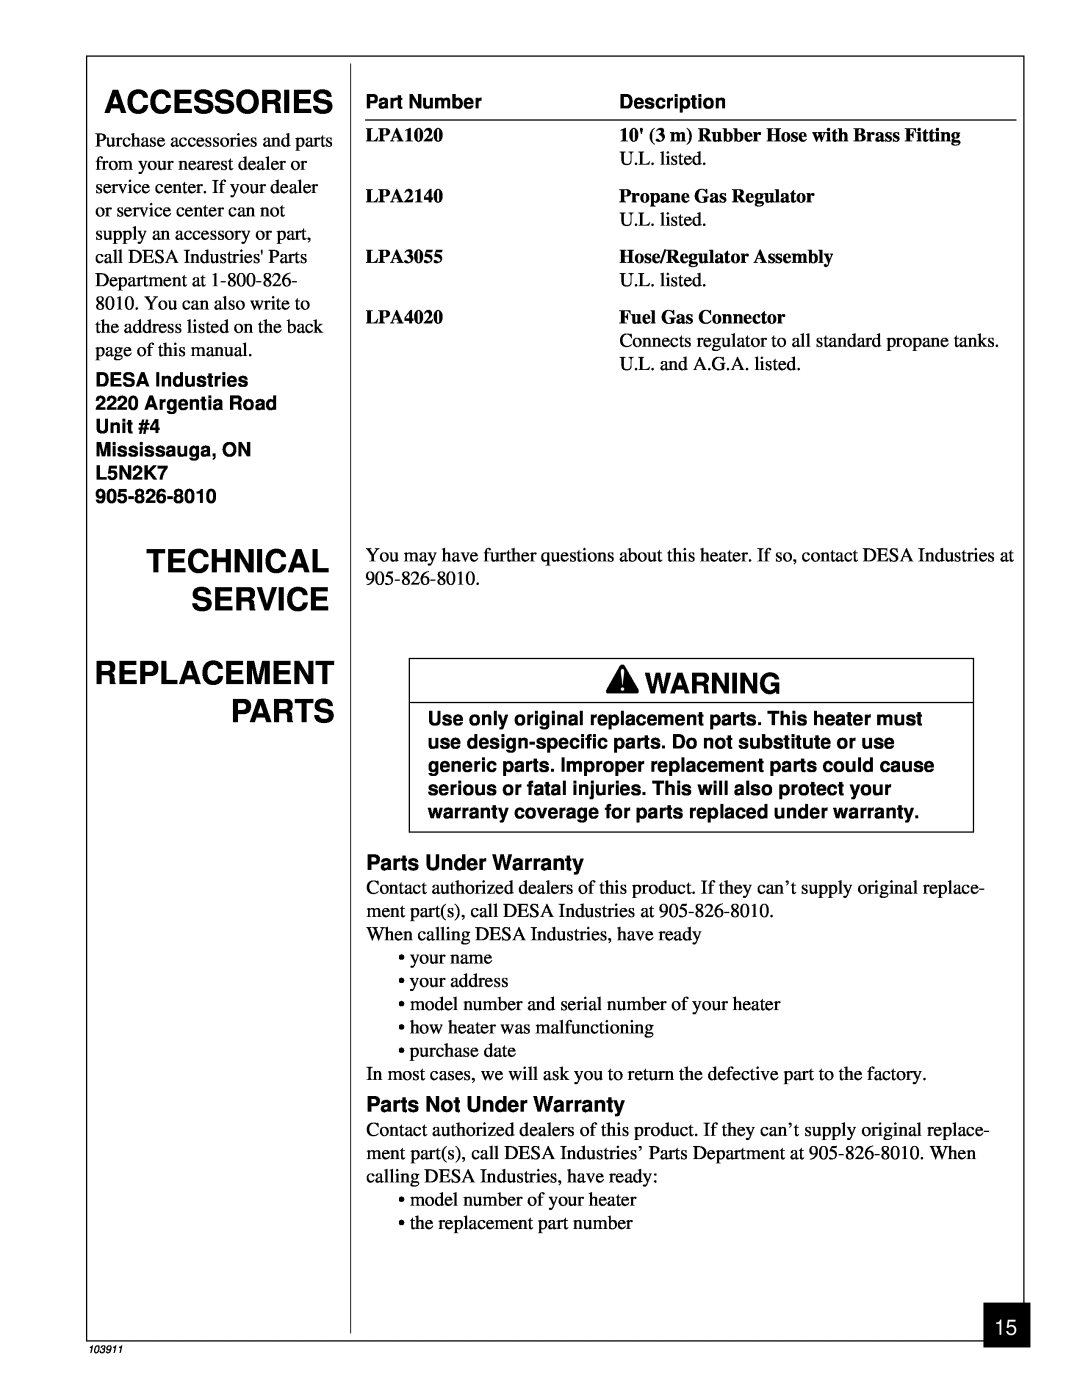 Desa RCLP50B owner manual Accessories, Technical Service Replacement Parts, Part Number, Description 